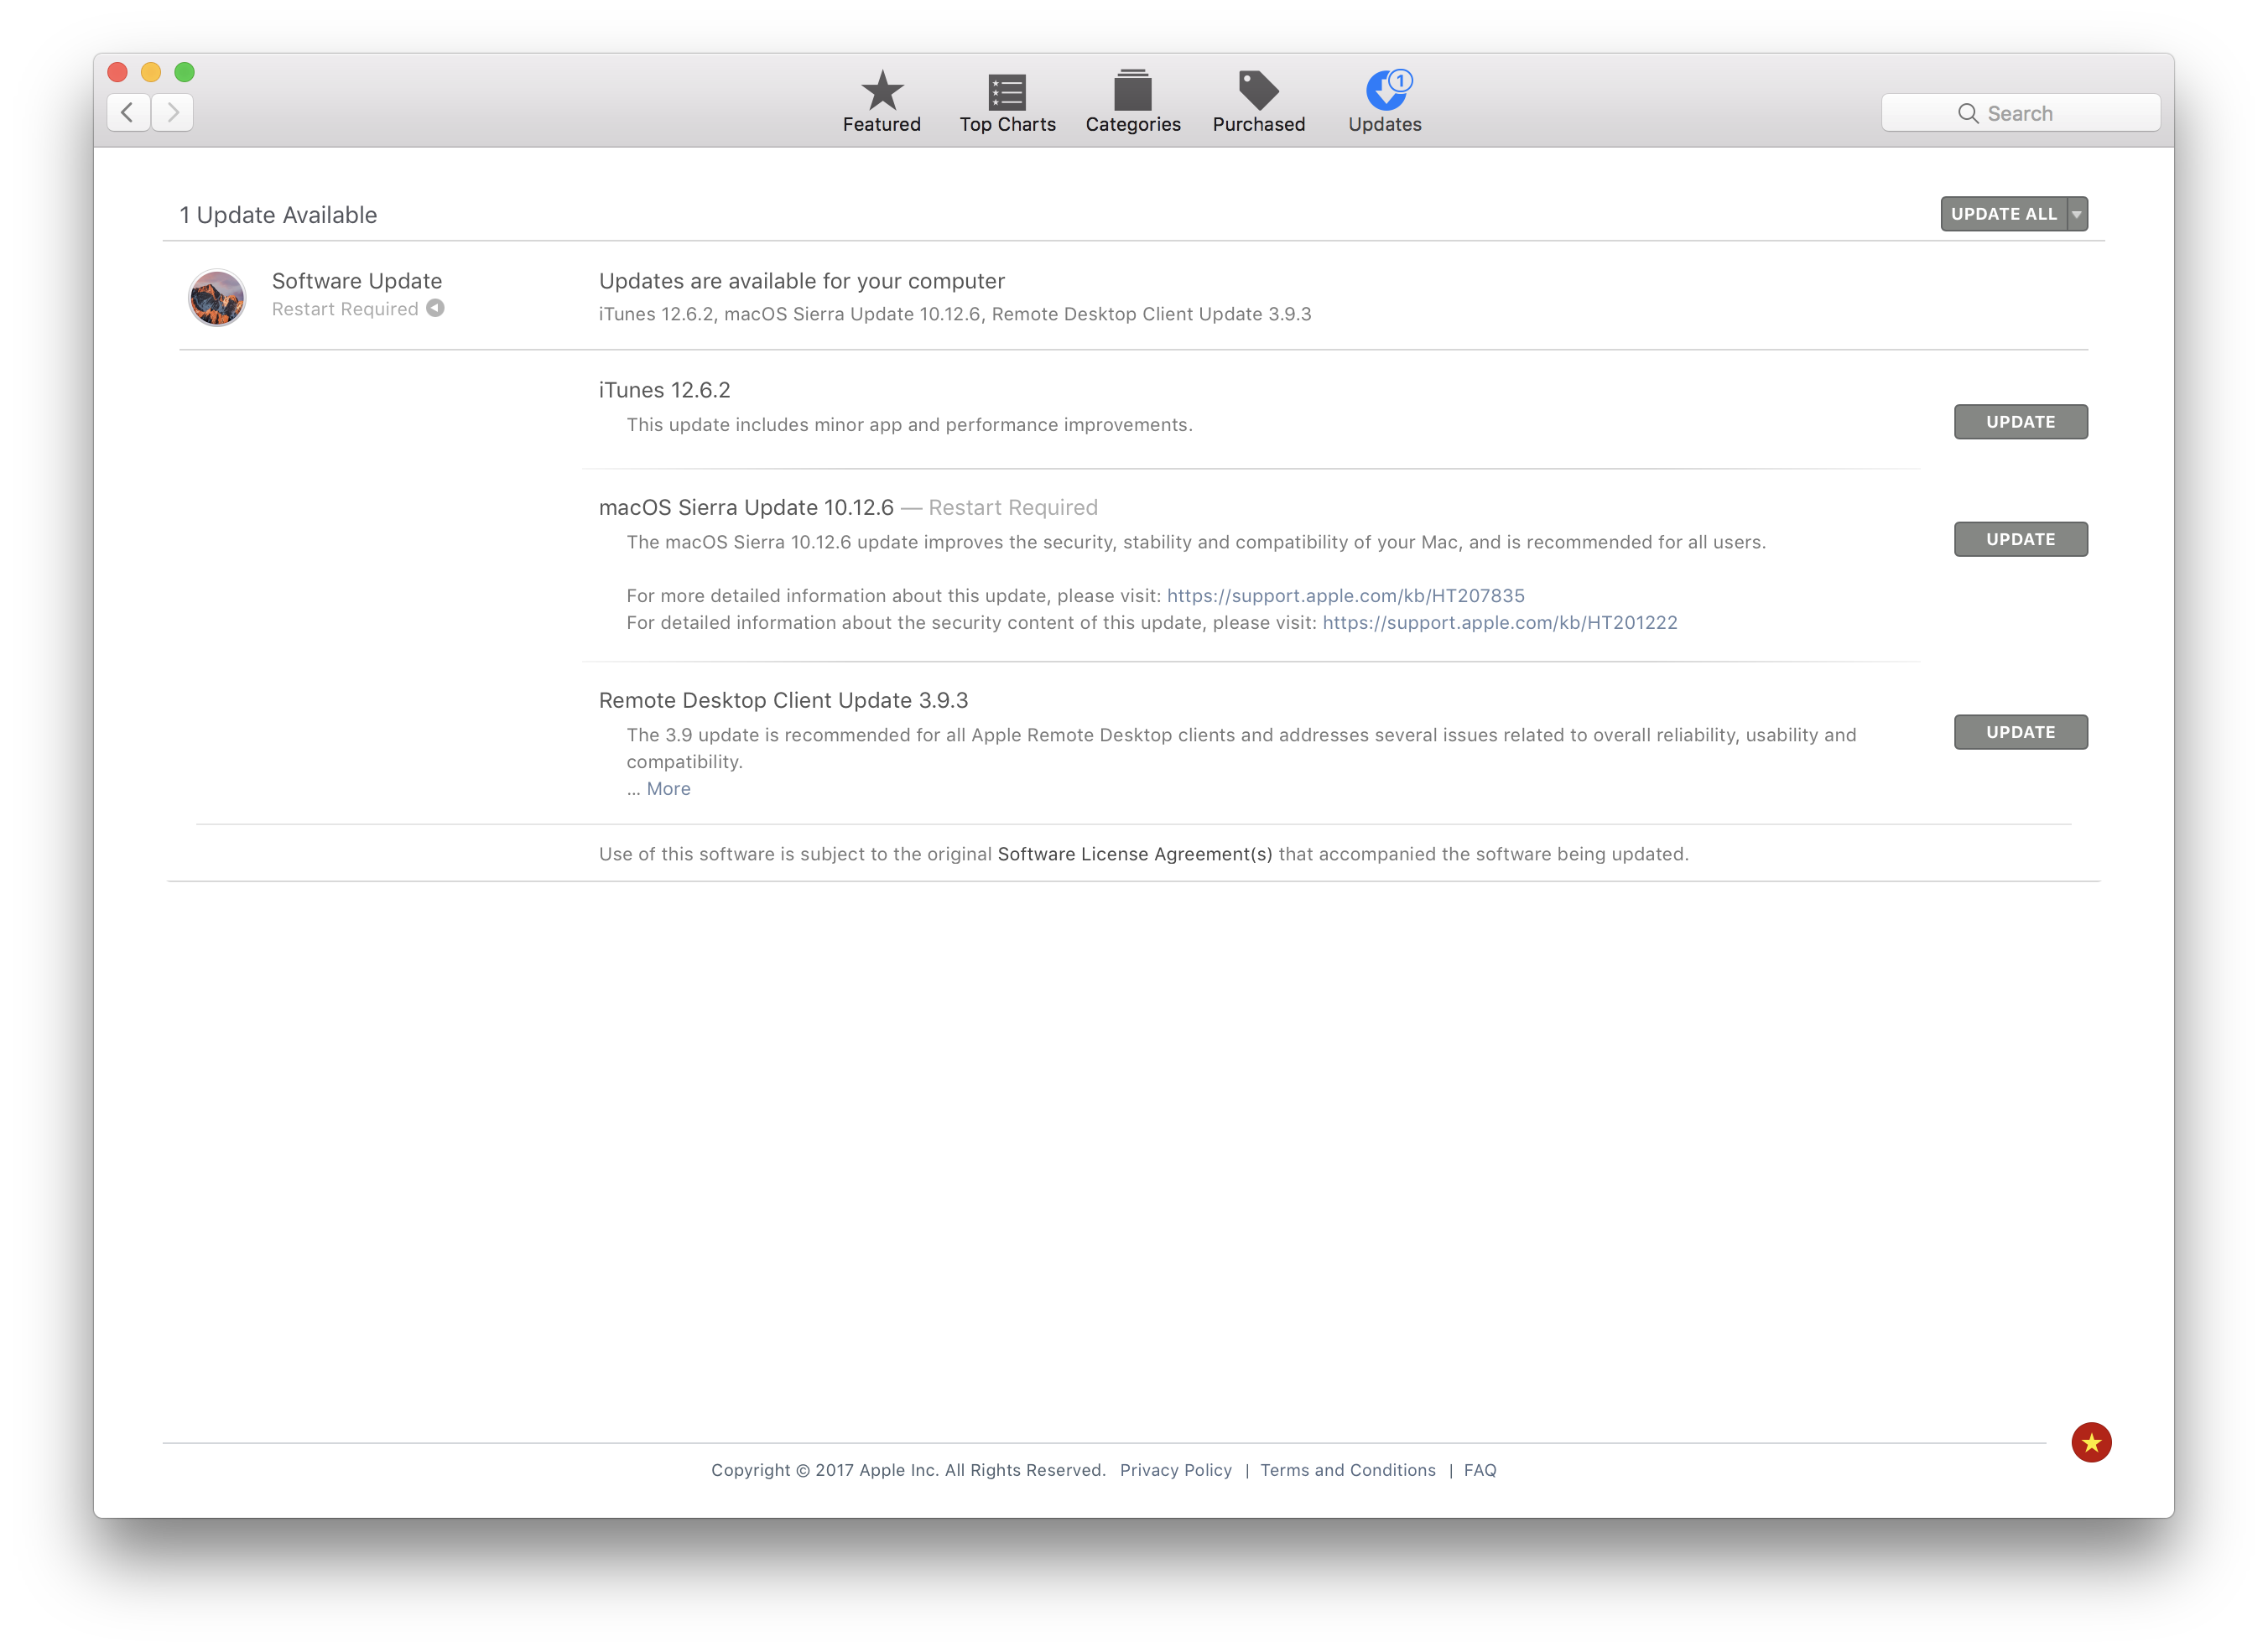 Apple phát hành bản cập nhật iOS 10.3.3 và macOS 10.12.6, mời tải về